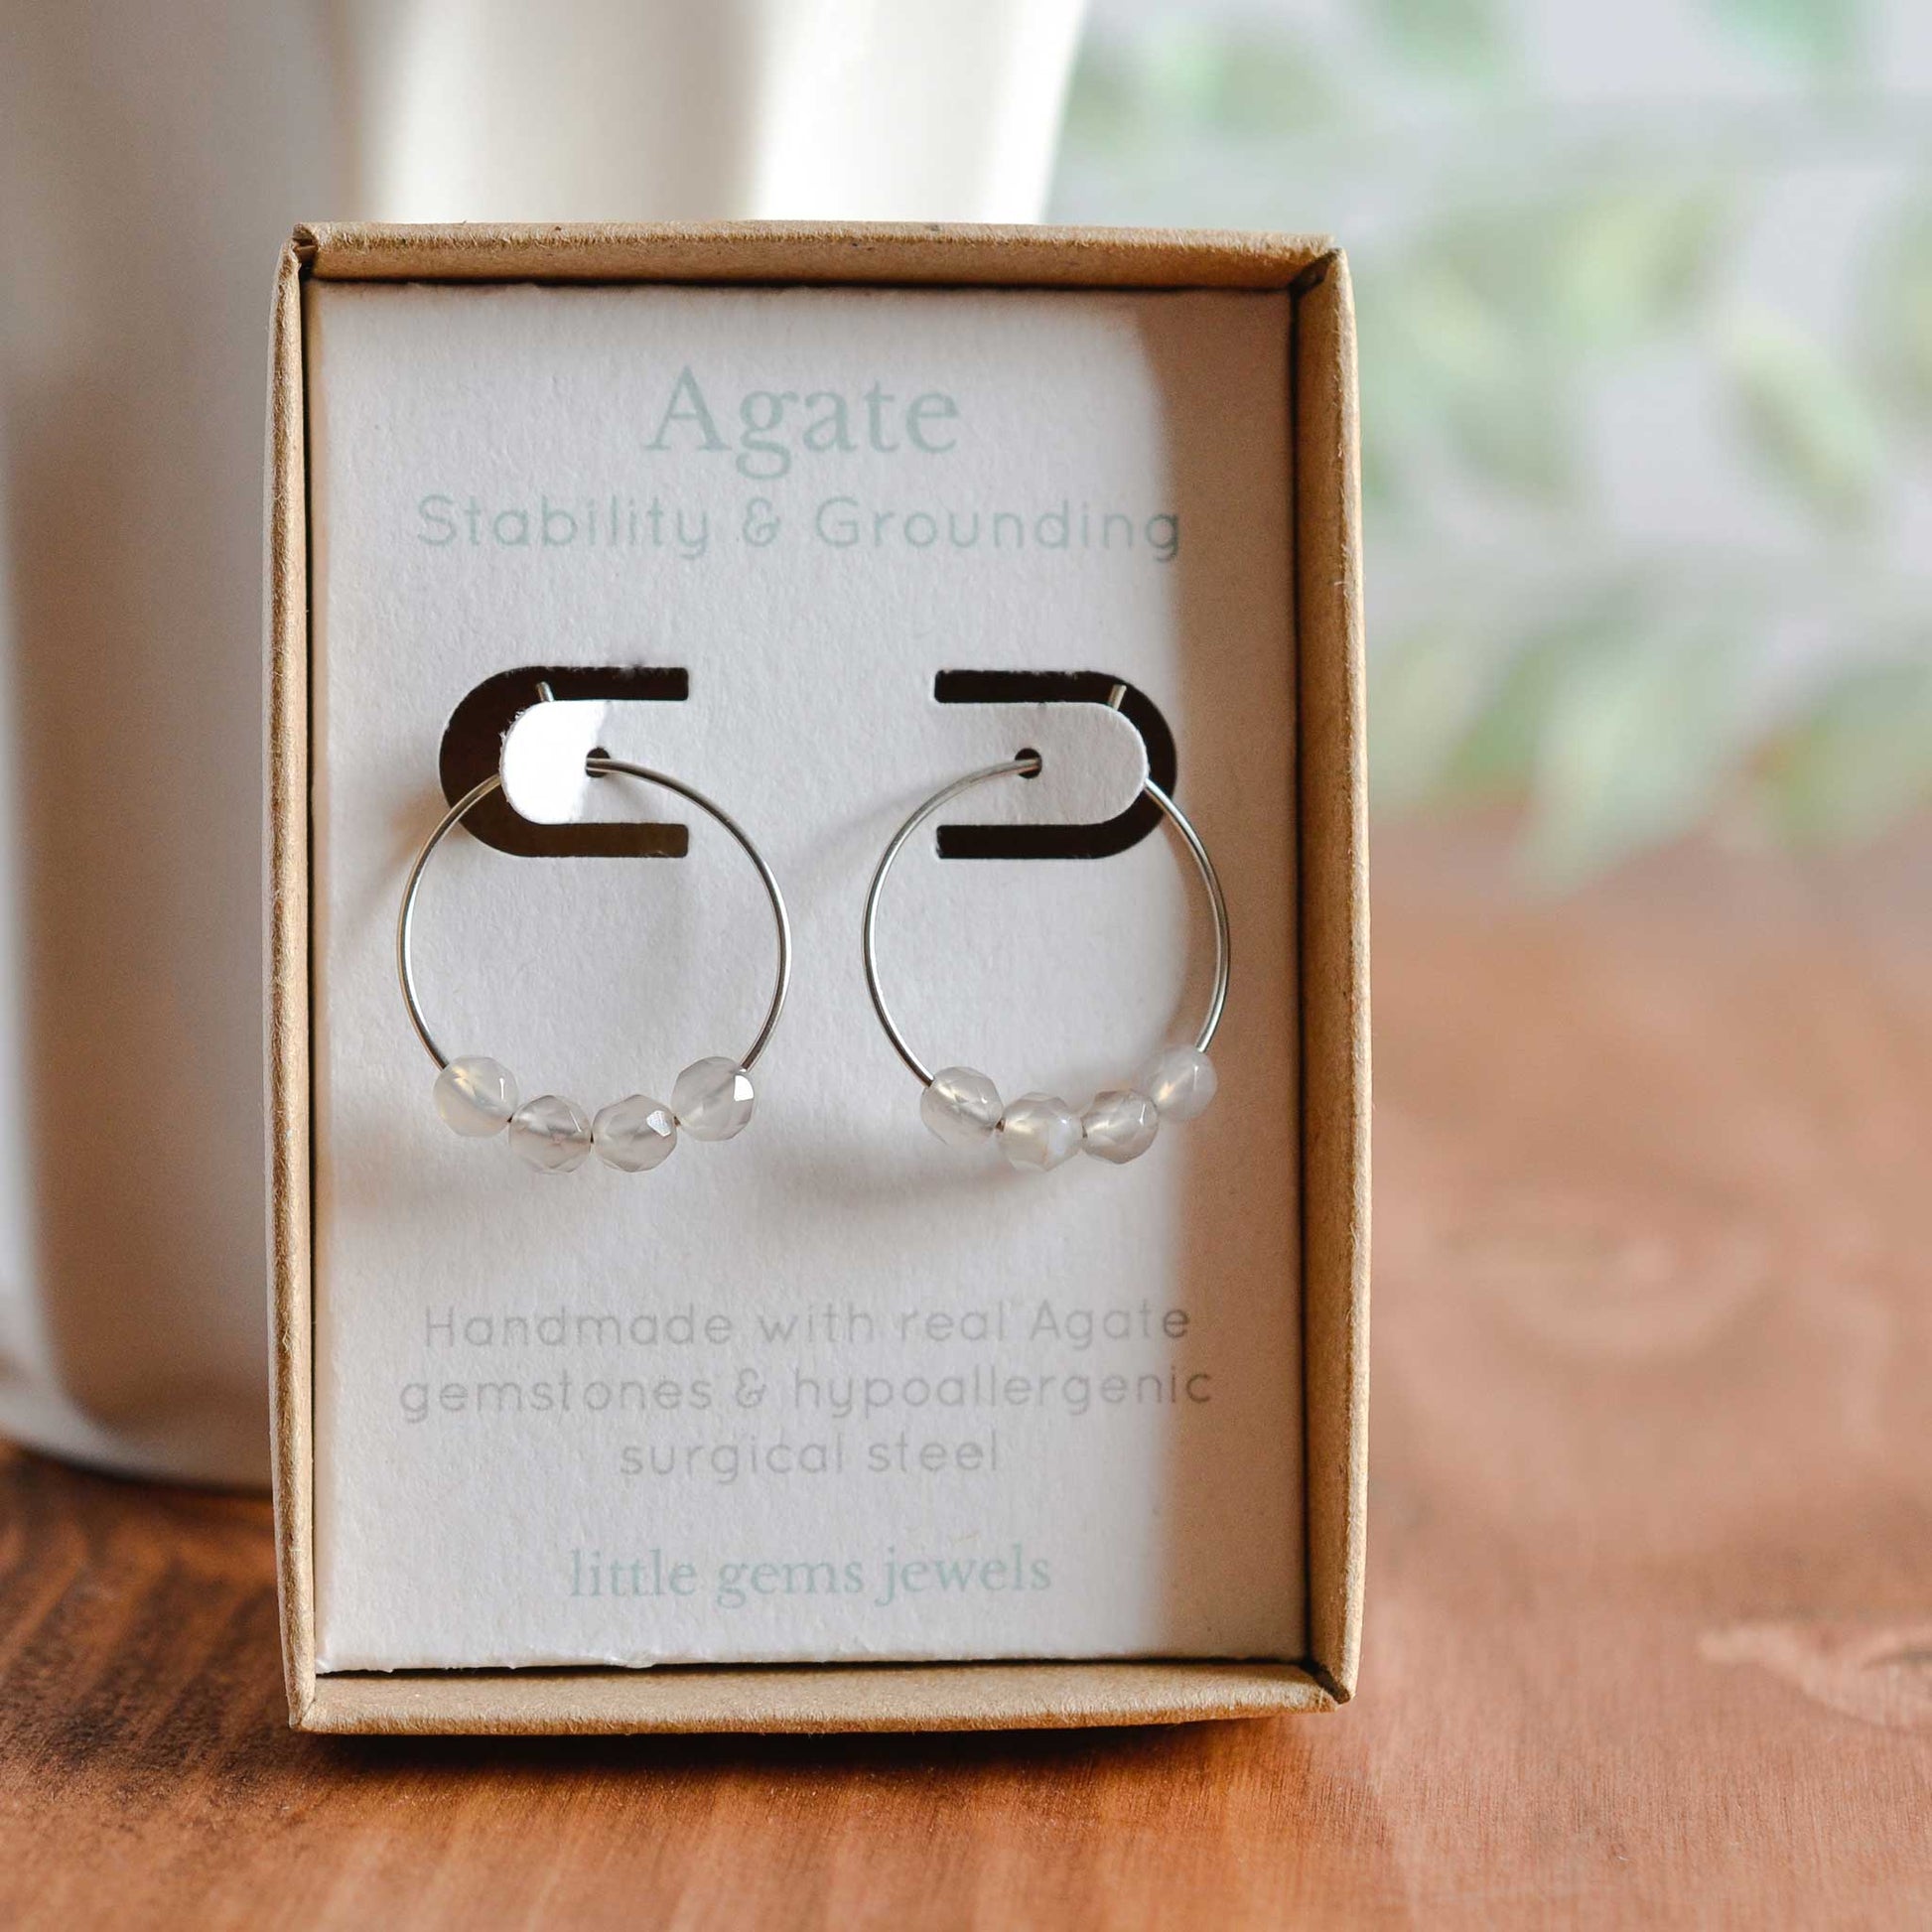 Grey Agate gemstone hoop earrings in gift box